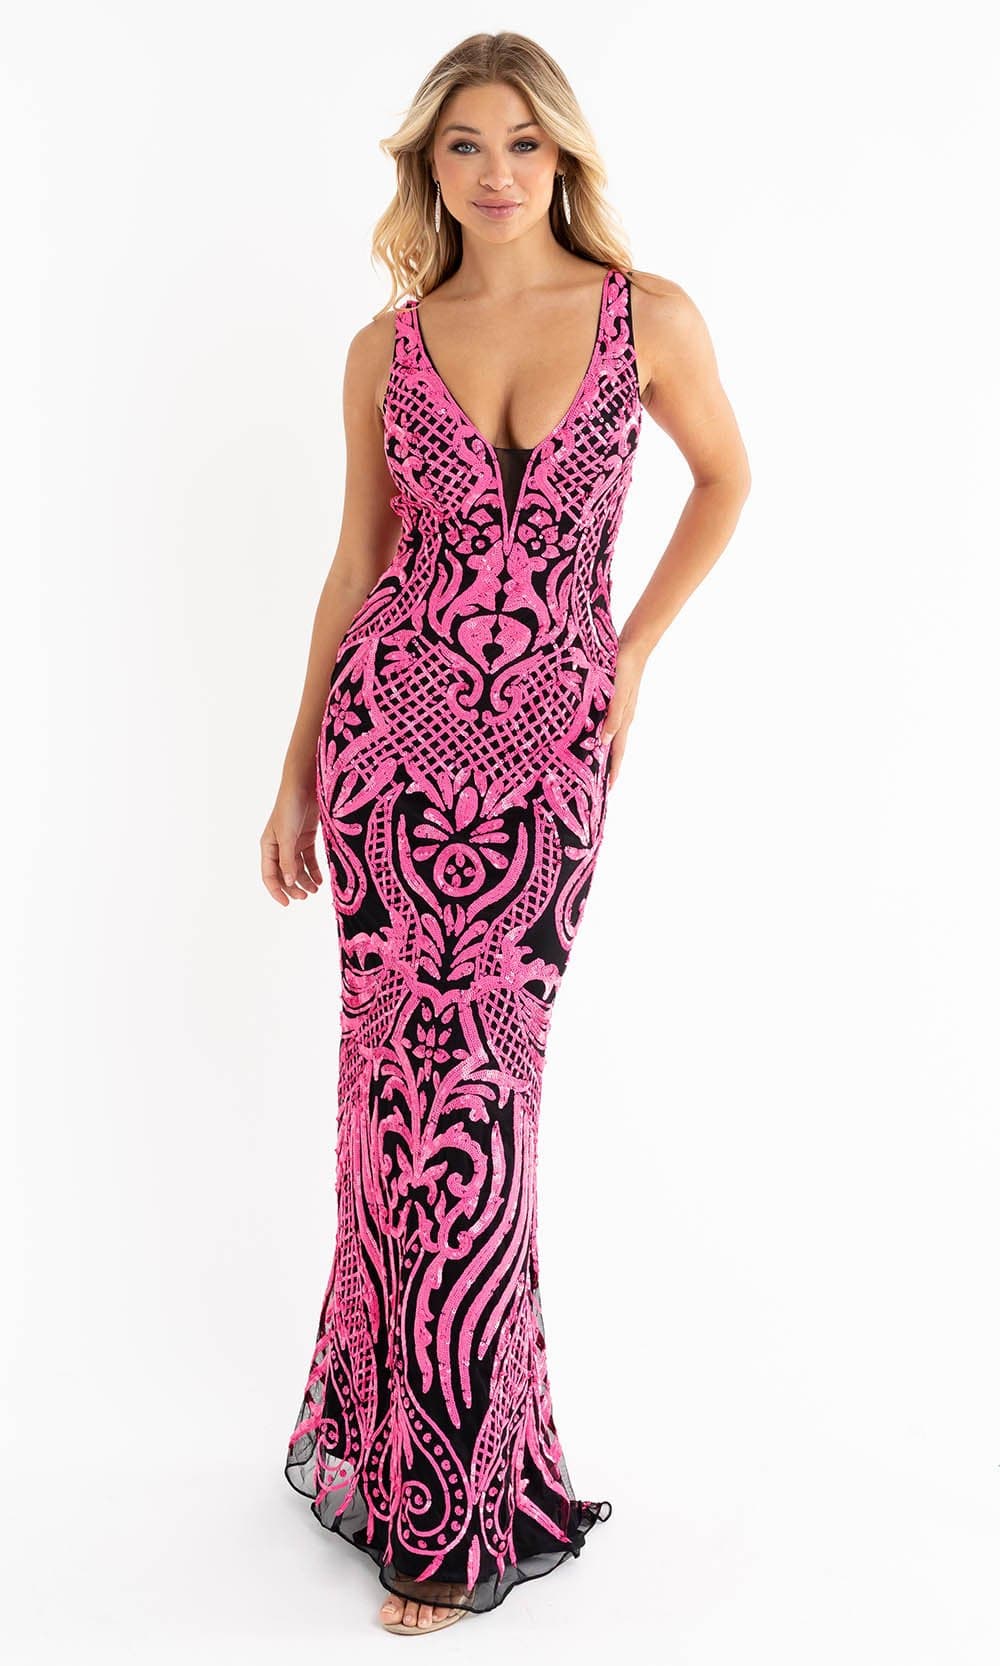 Primavera Couture - 3722 V-Neck Iridescent Sequin Gown
